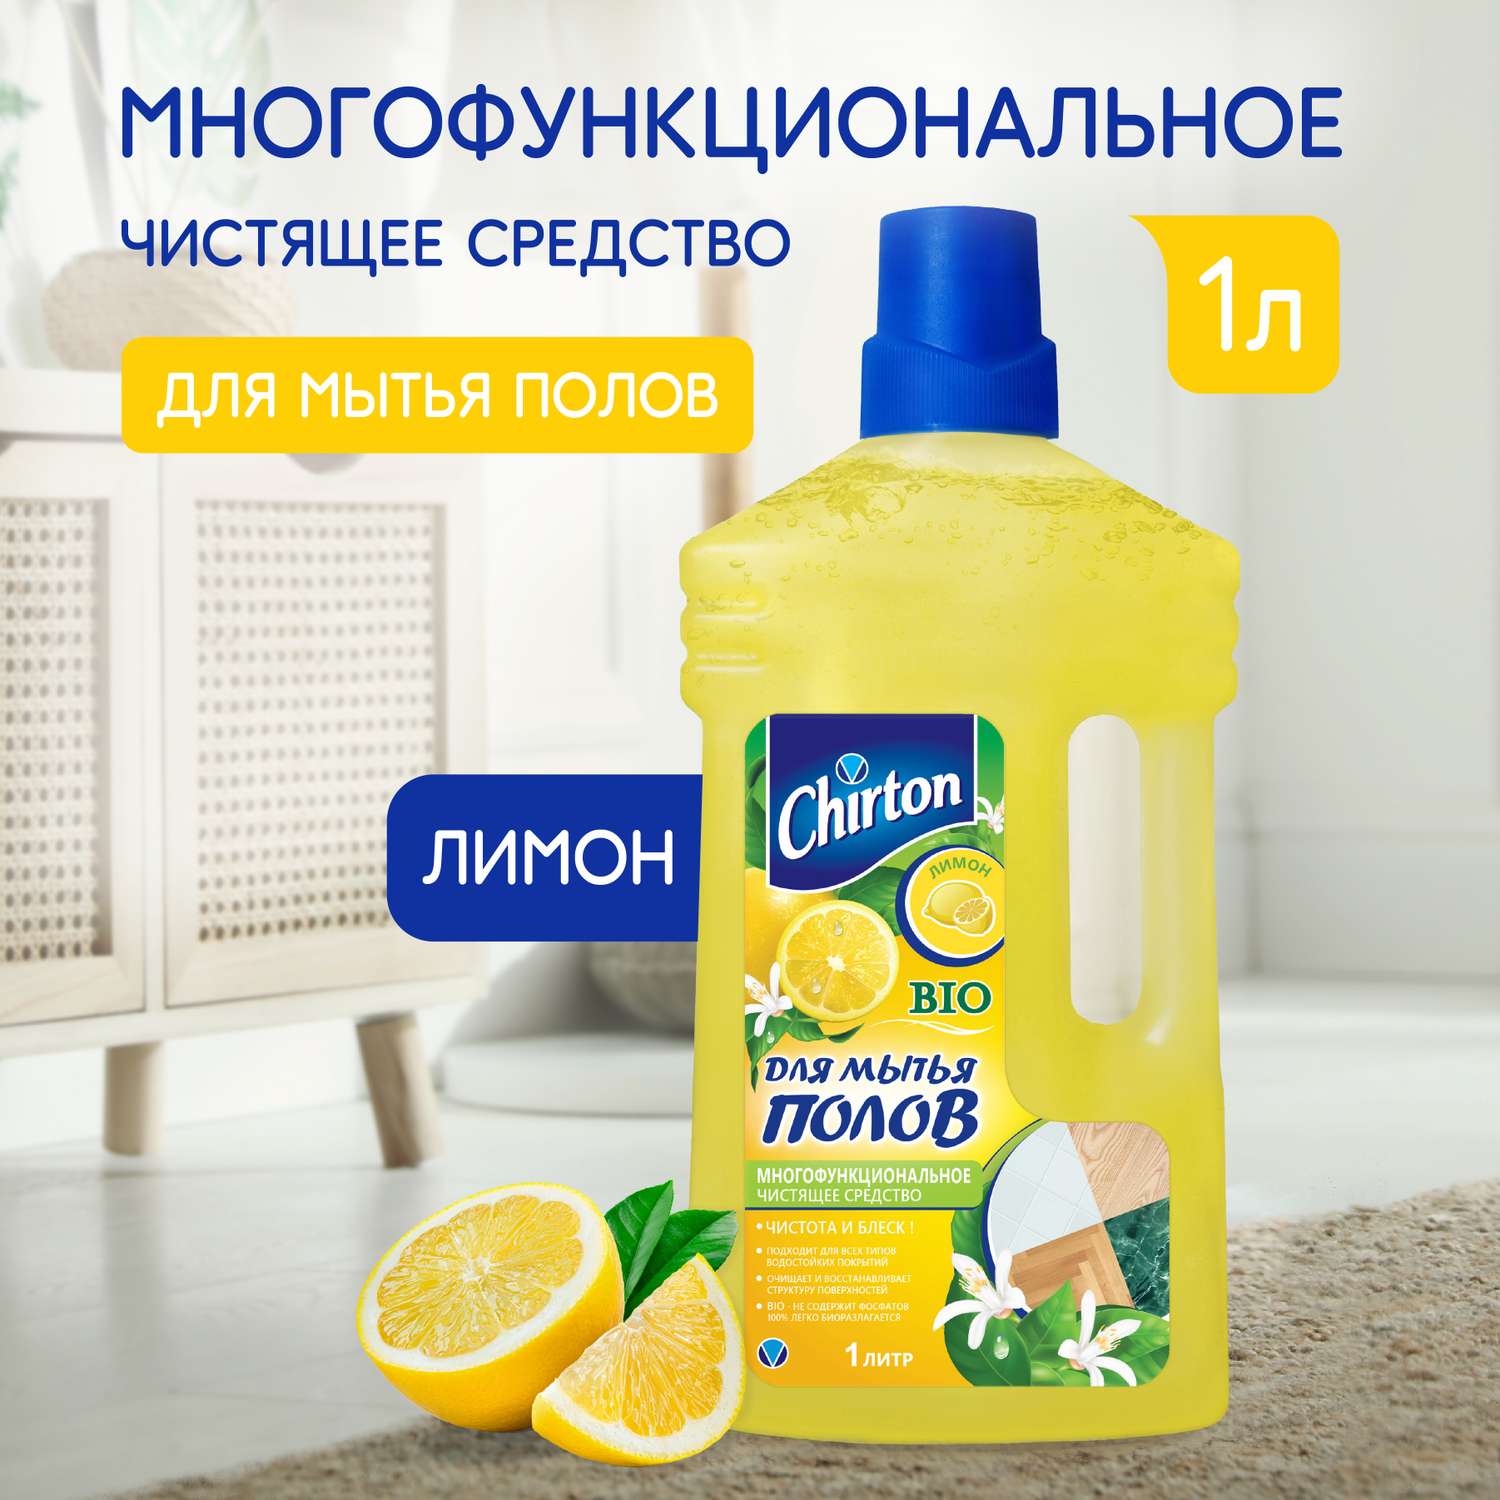 Чистящее средство Chirton для мытья полов Лимон 1 л - фото 1